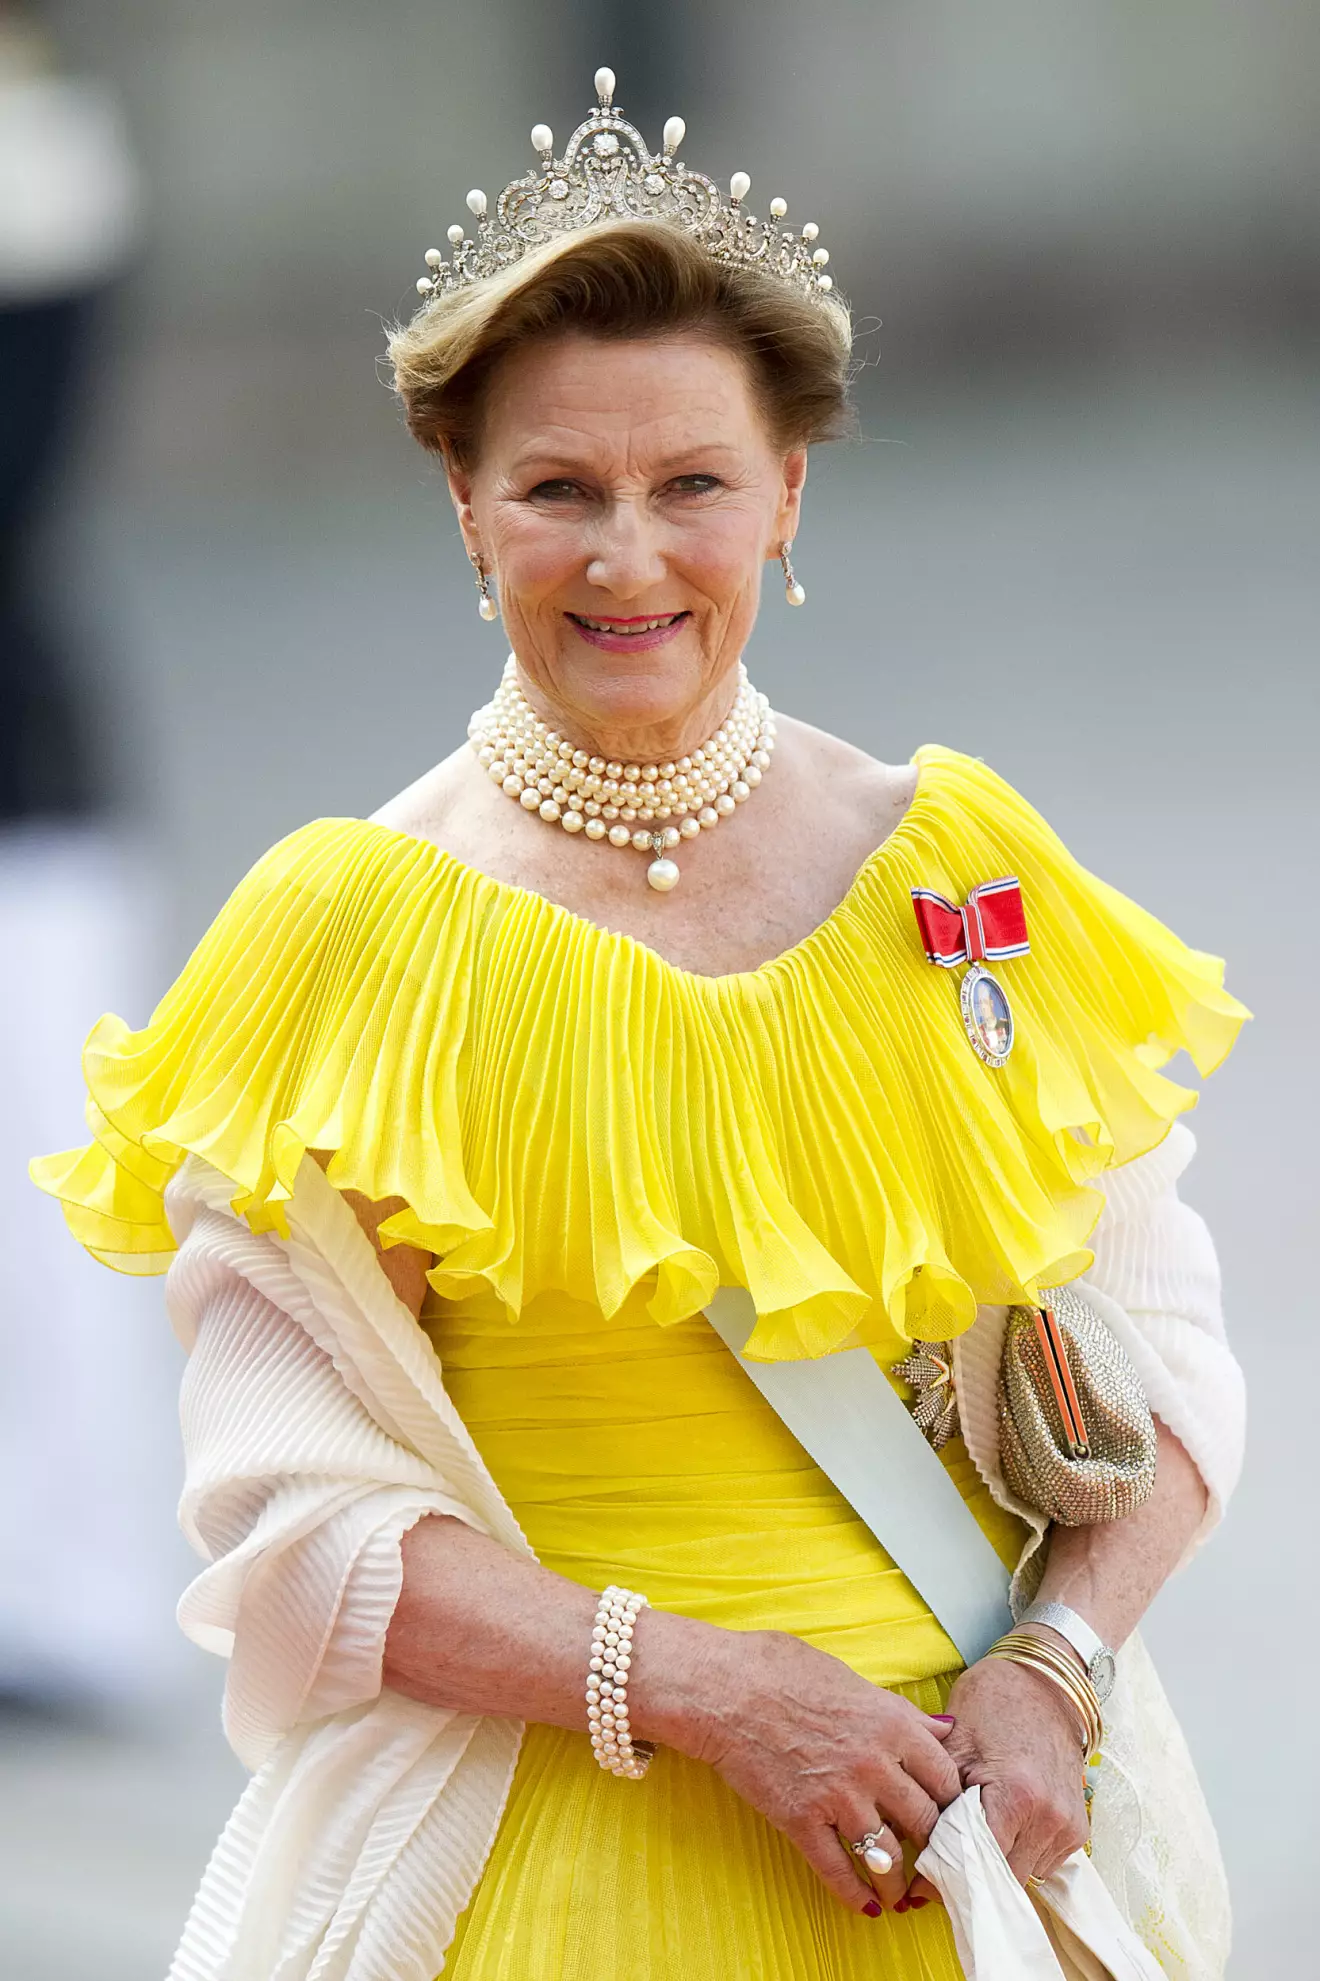 Drottning Sonja i en kopia av norska kungafamiljens stulna pärldiadem